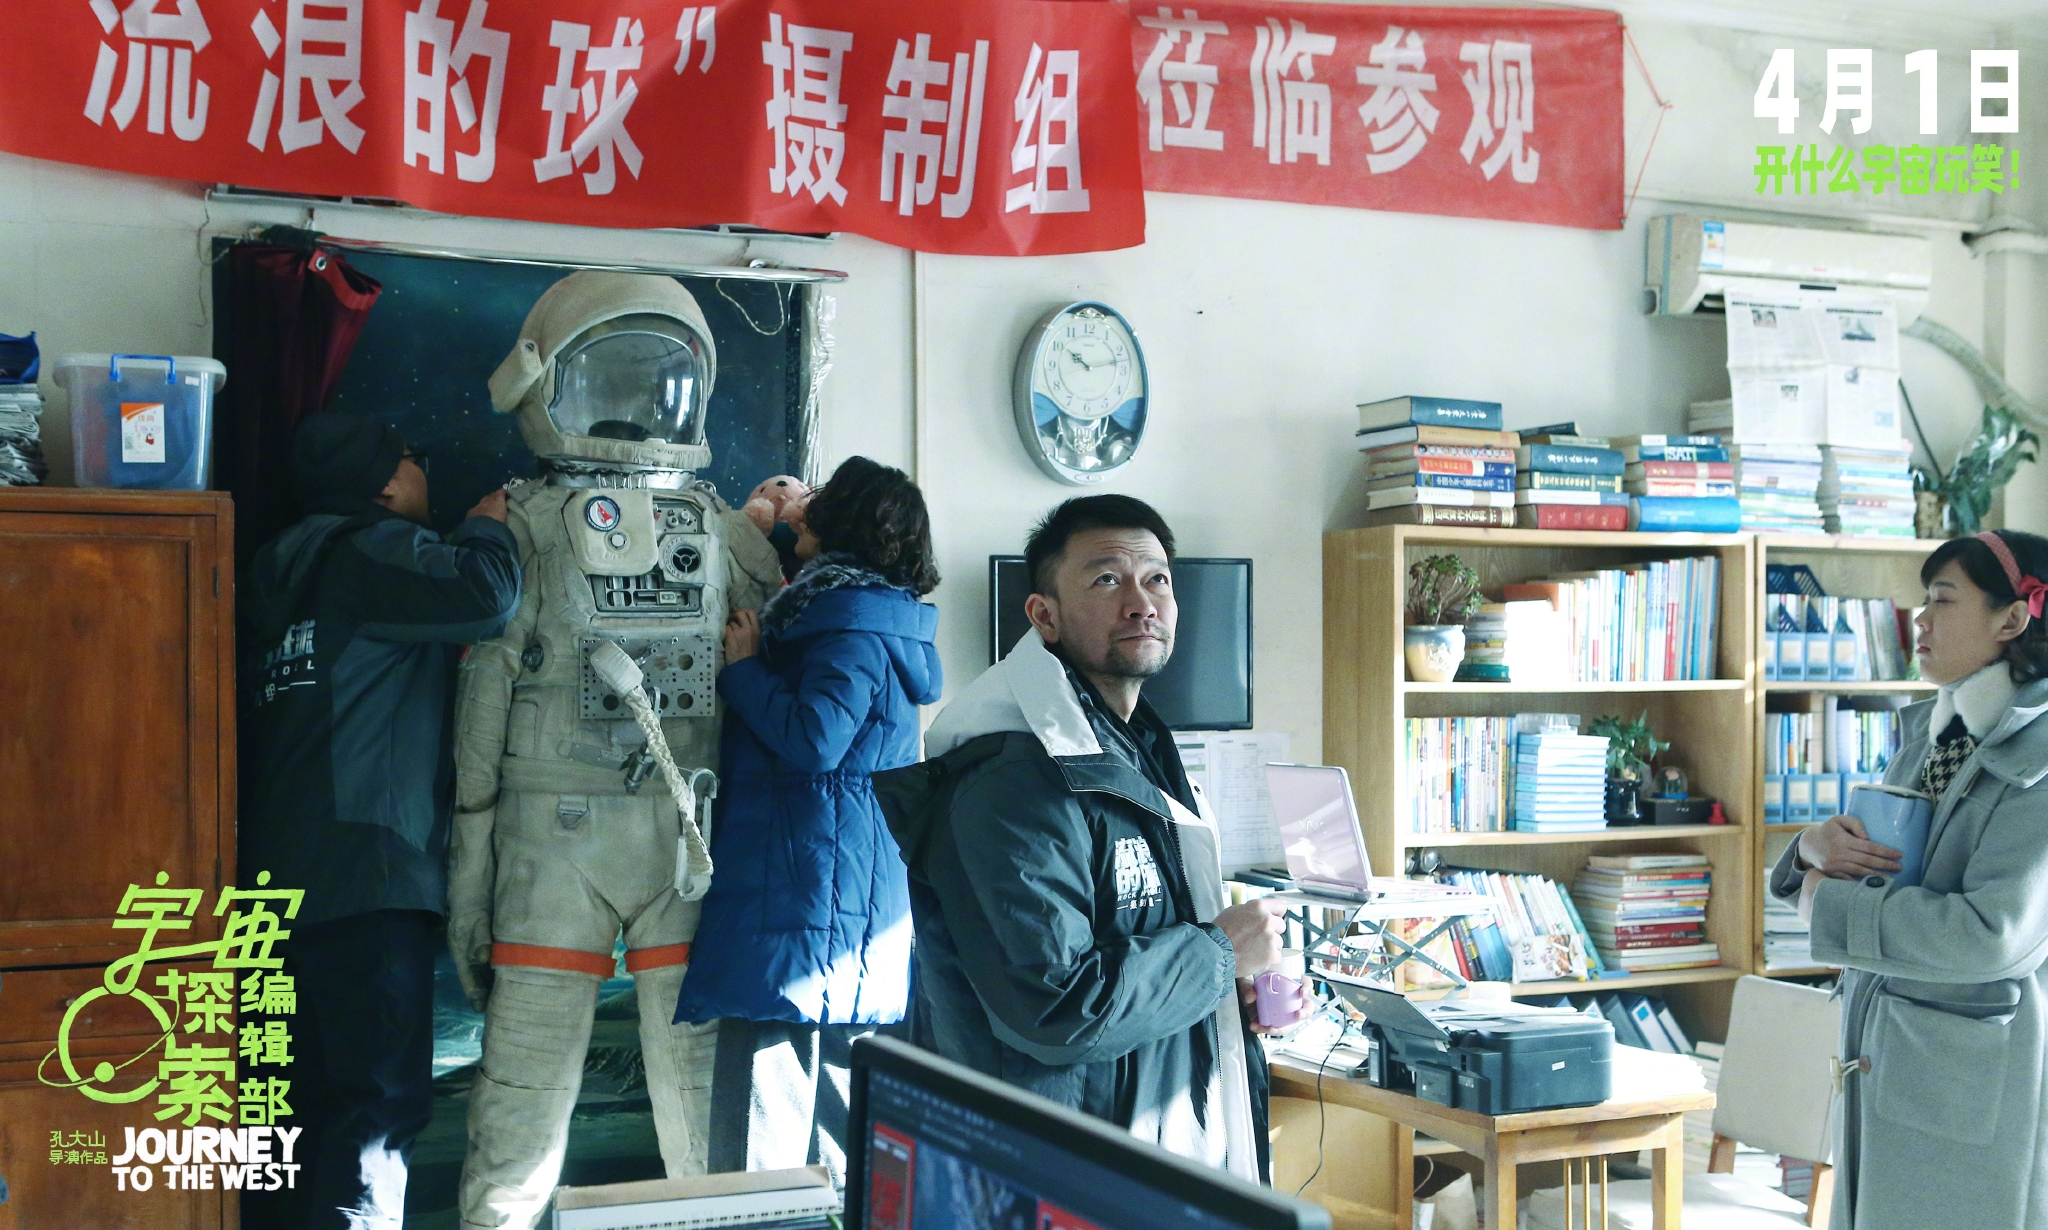 宇宙探索编辑部 Journey to the West-上海思远影视文化传播有限公司